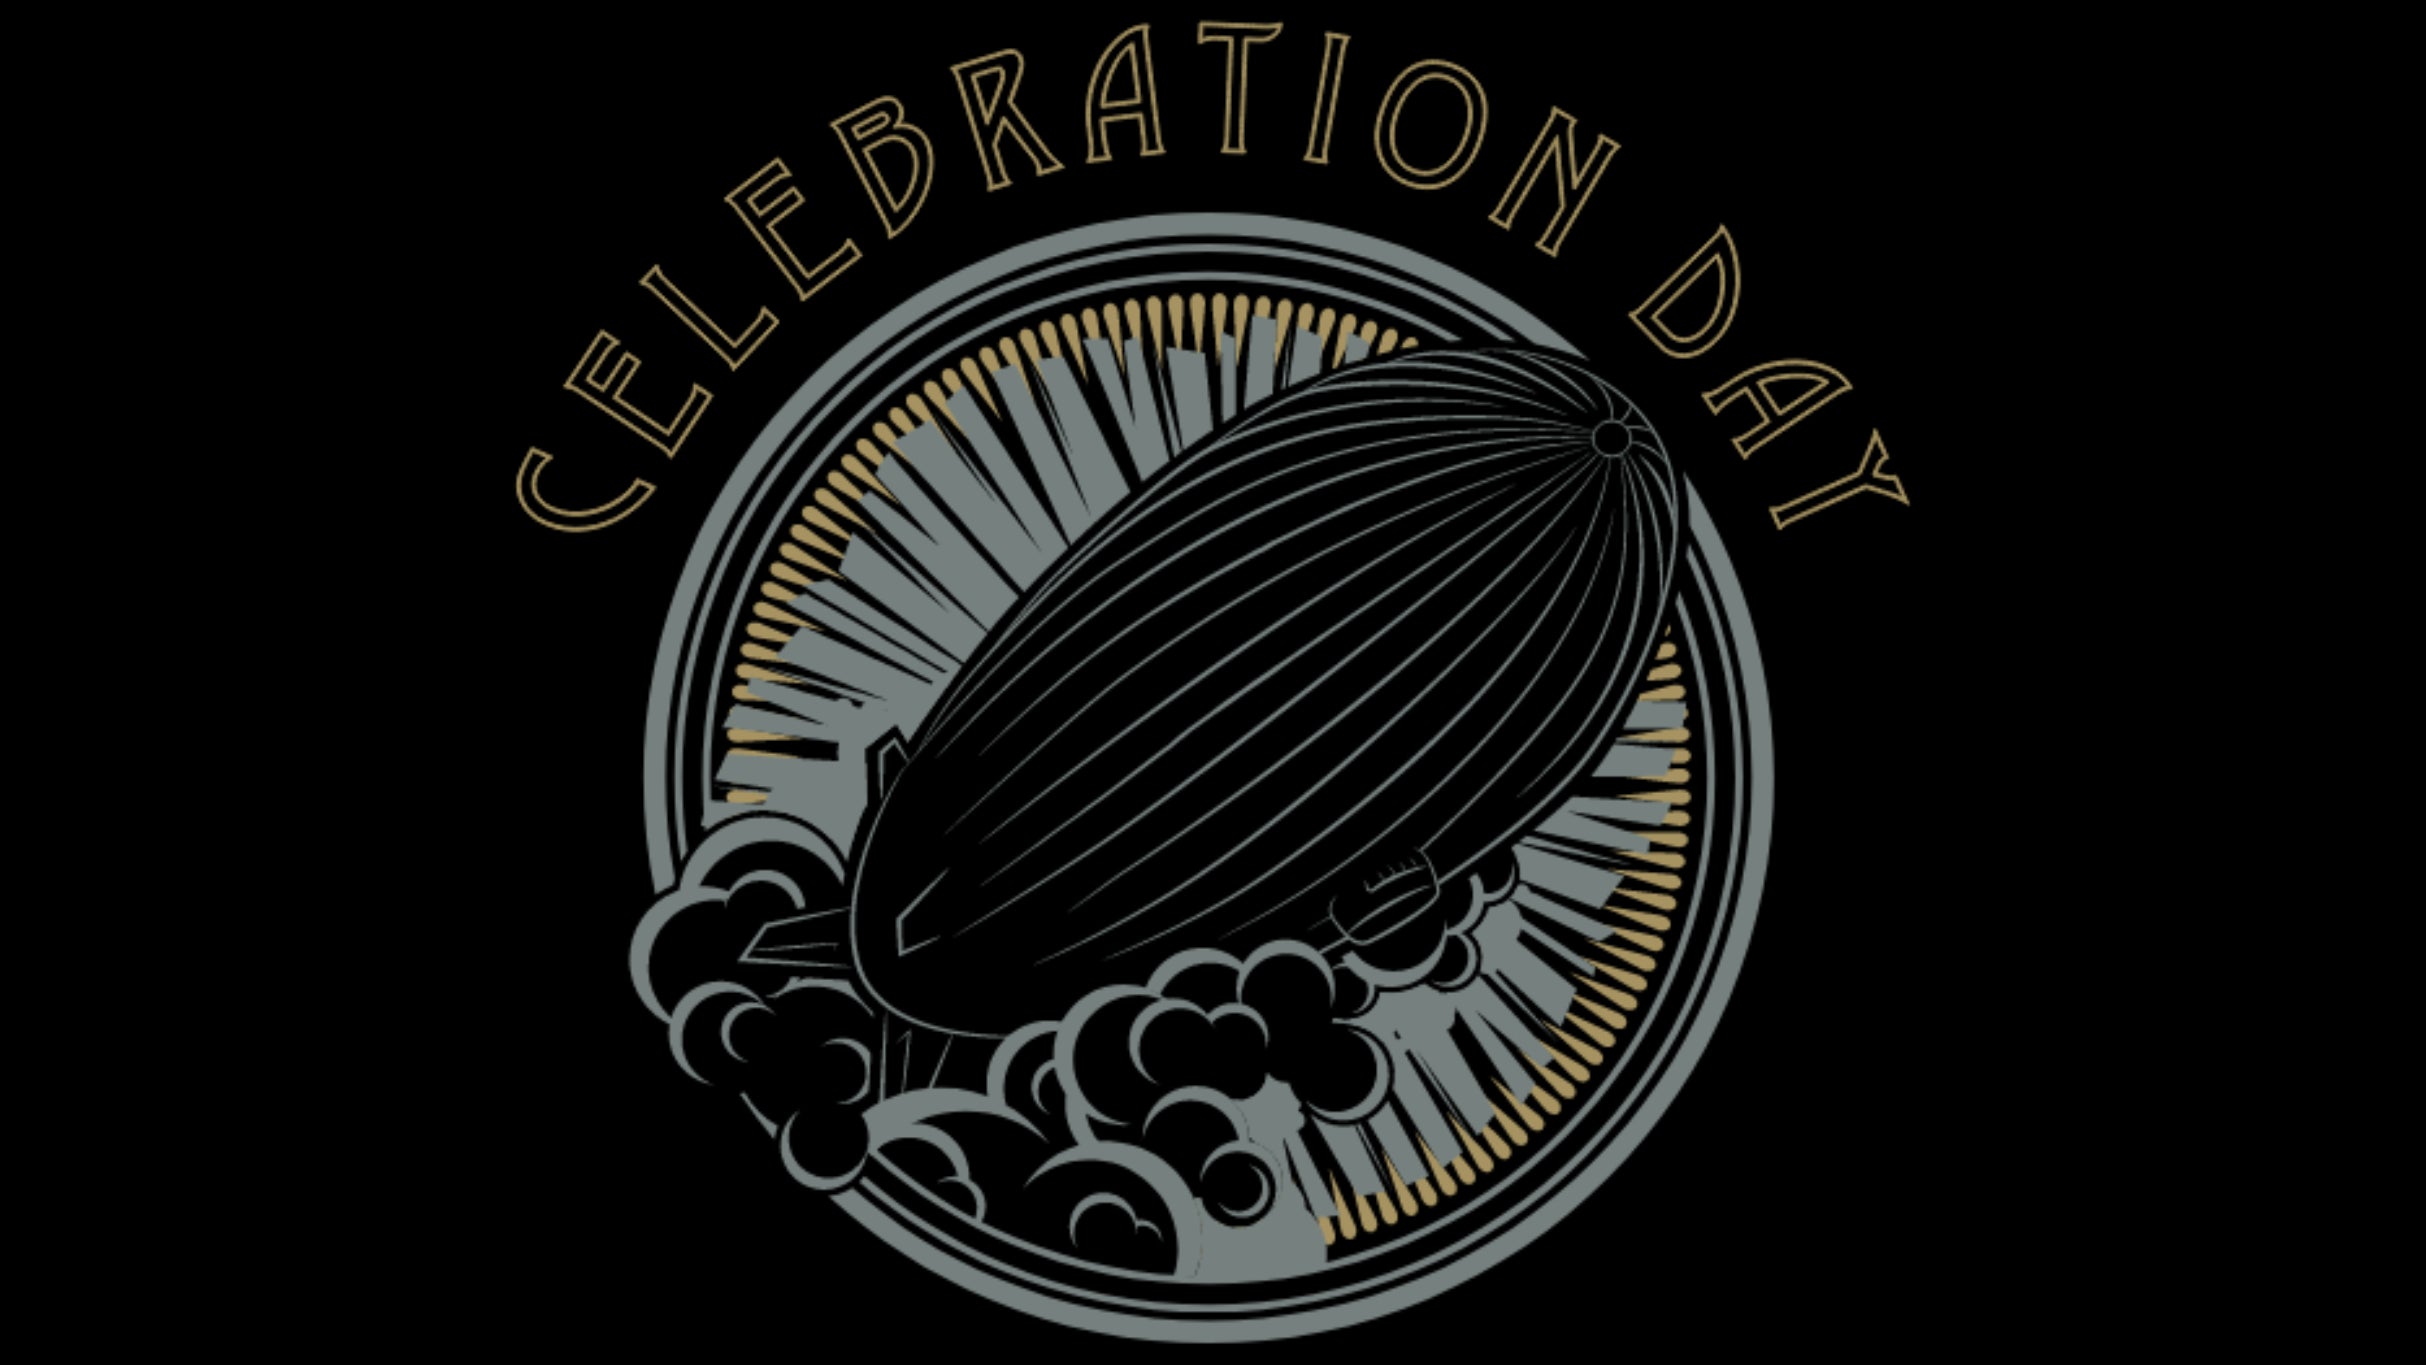 Celebration Day - A KSHE 95 Rock And Roll Fantasy presale information on freepresalepasswords.com